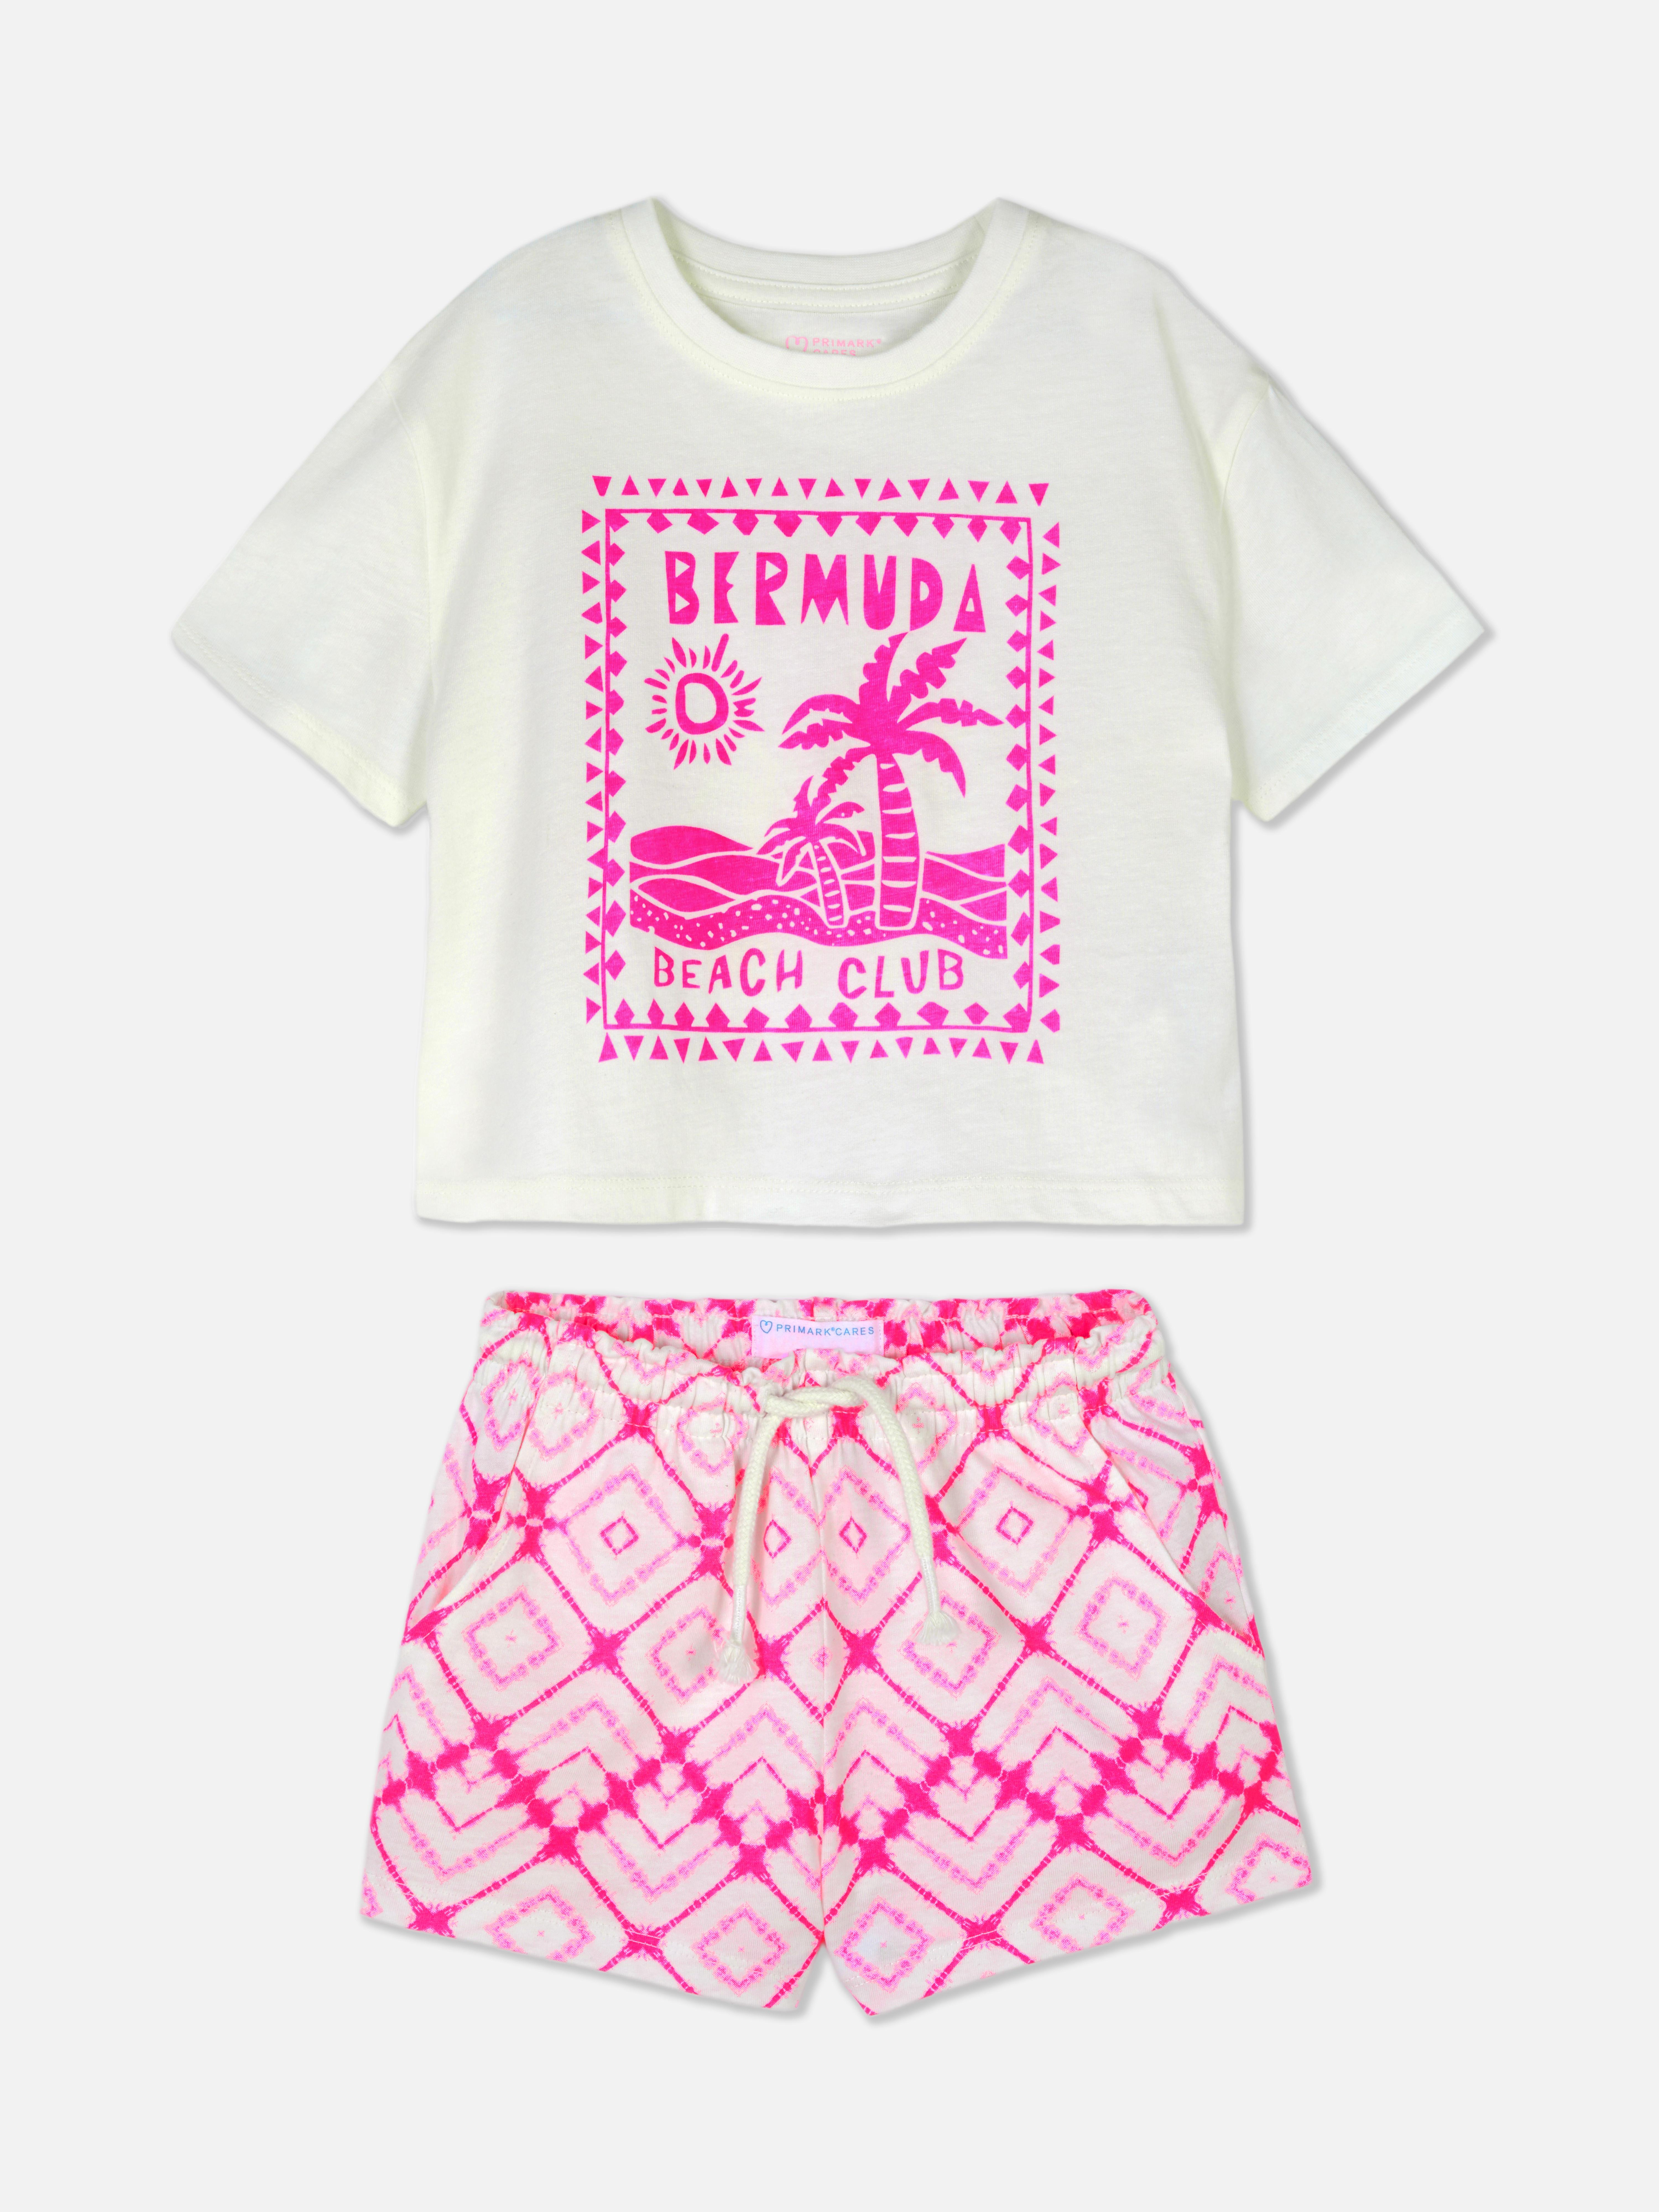 Ensemble t-shirt et short Bermuda Beach Club